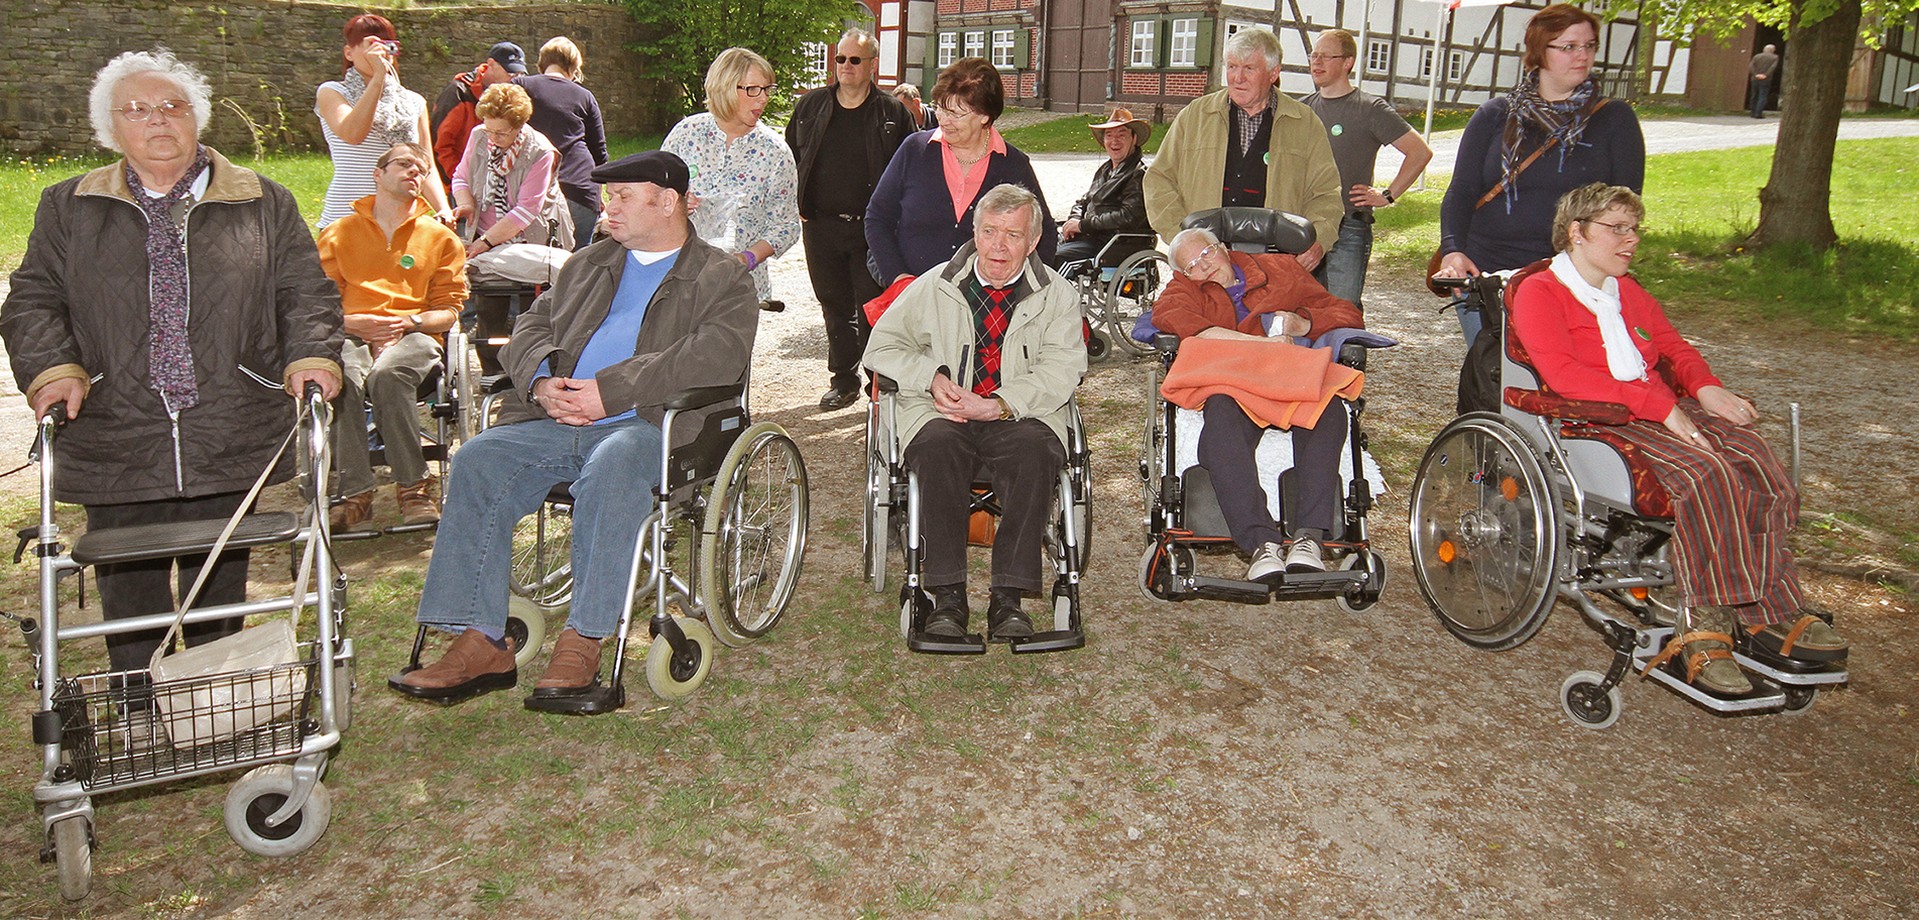 Eine Gruppe von 18 erwachsenen Personen. Einige sind schon etwas älter. Sie benutzen eine Gehhilfe oder sitzen im Rollstuhl.